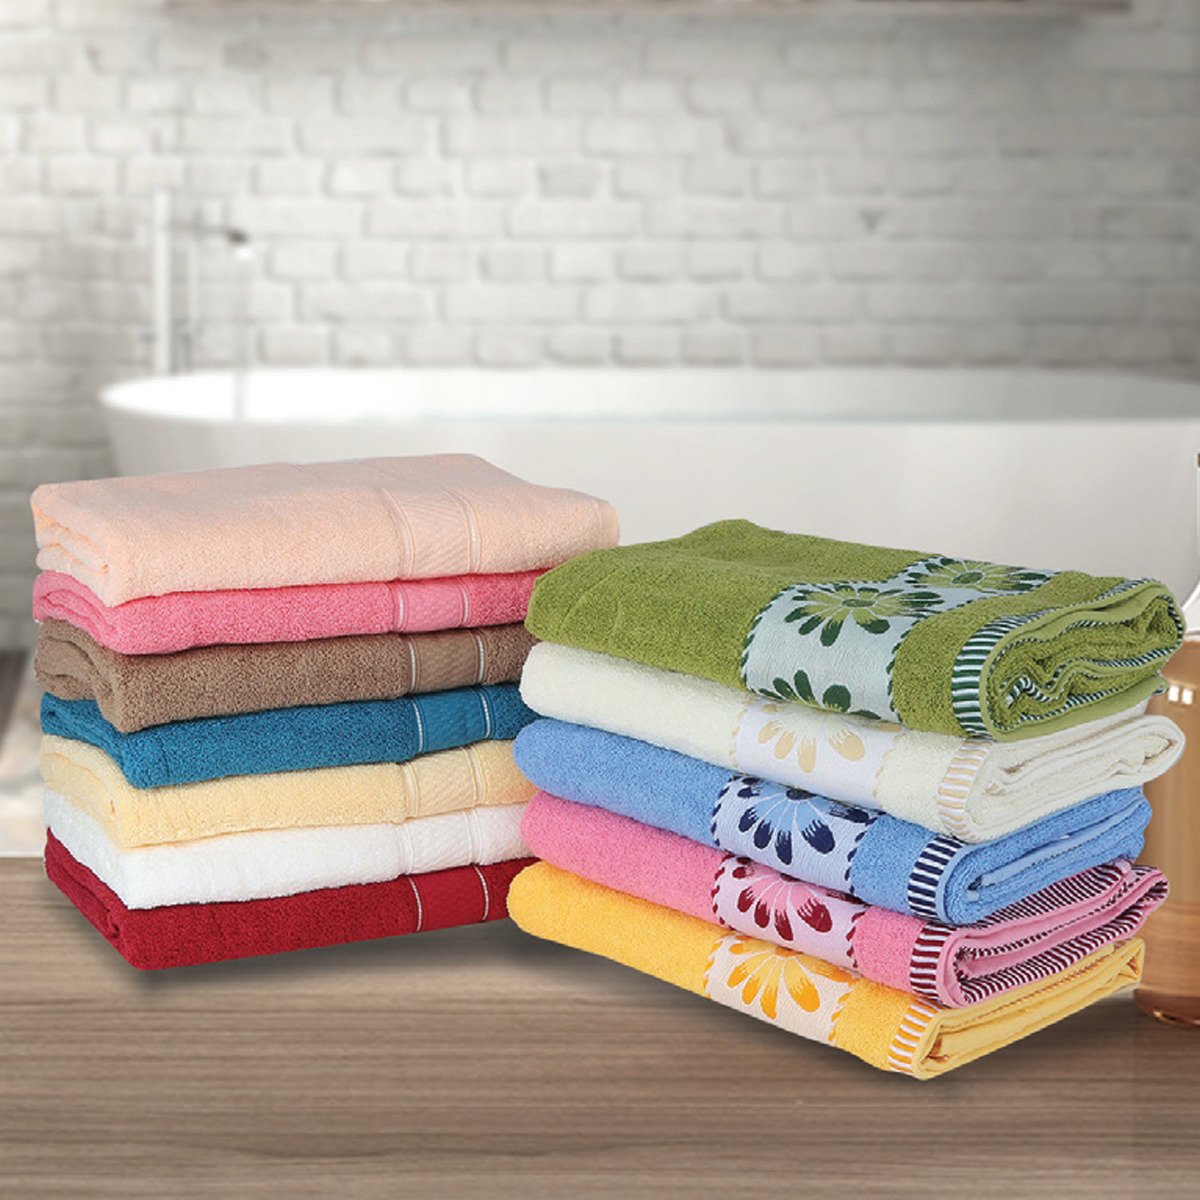 Maple Leaf Home Bath Towel Cotton 1pc Assorted Colors Size: W70 x L140cm